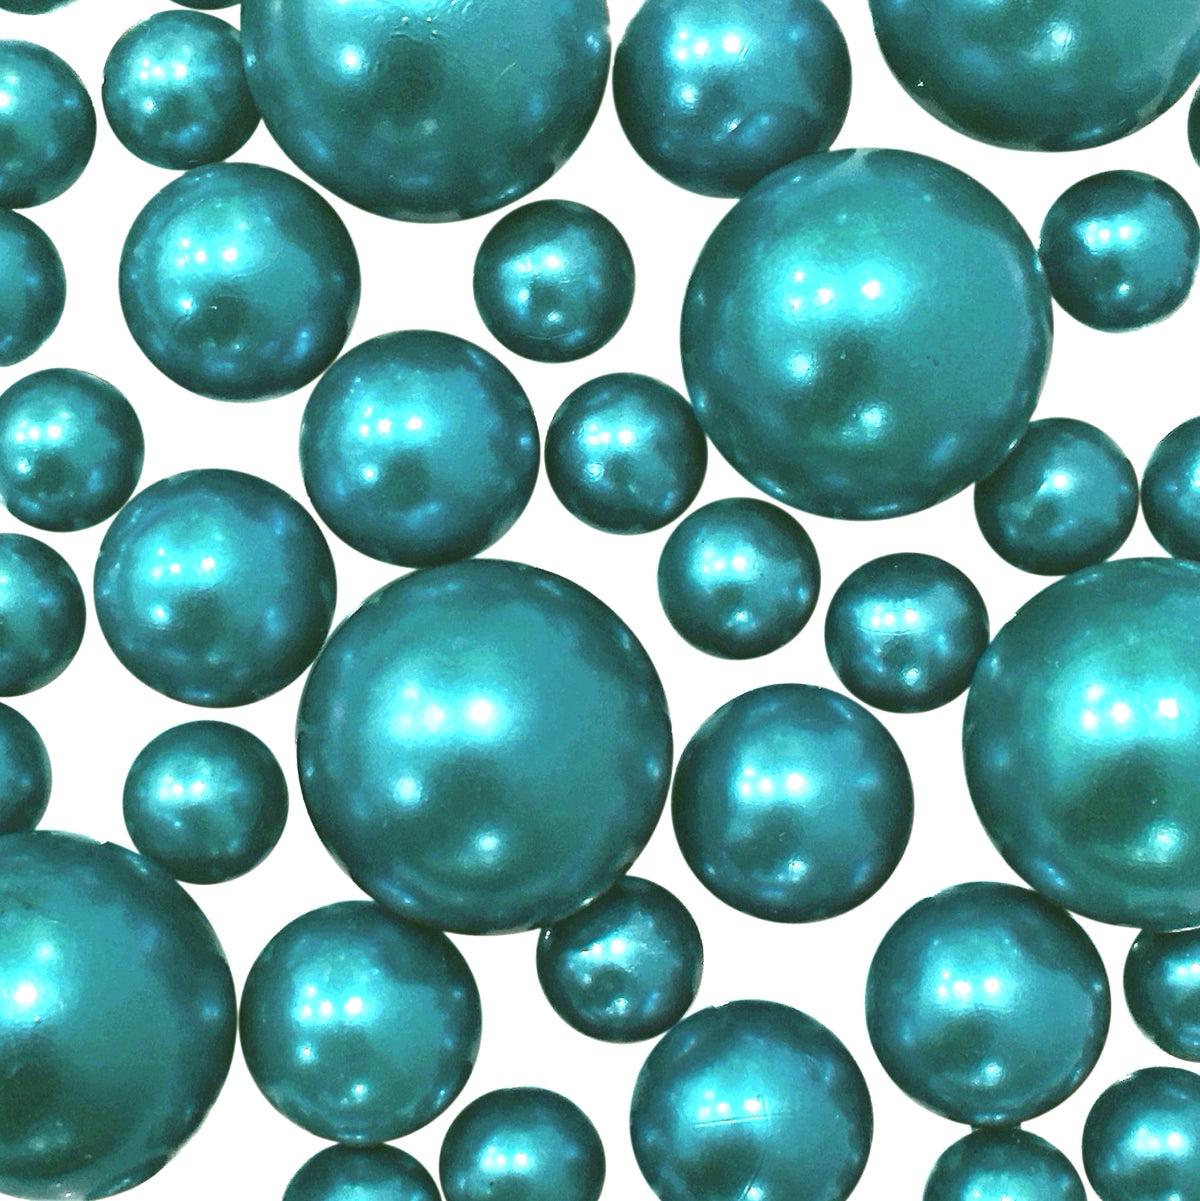 "Floating" Turquoise - Robin Egg Blue Pearls - No Hole Jumbo & Assorted Sizes Vase Decorations